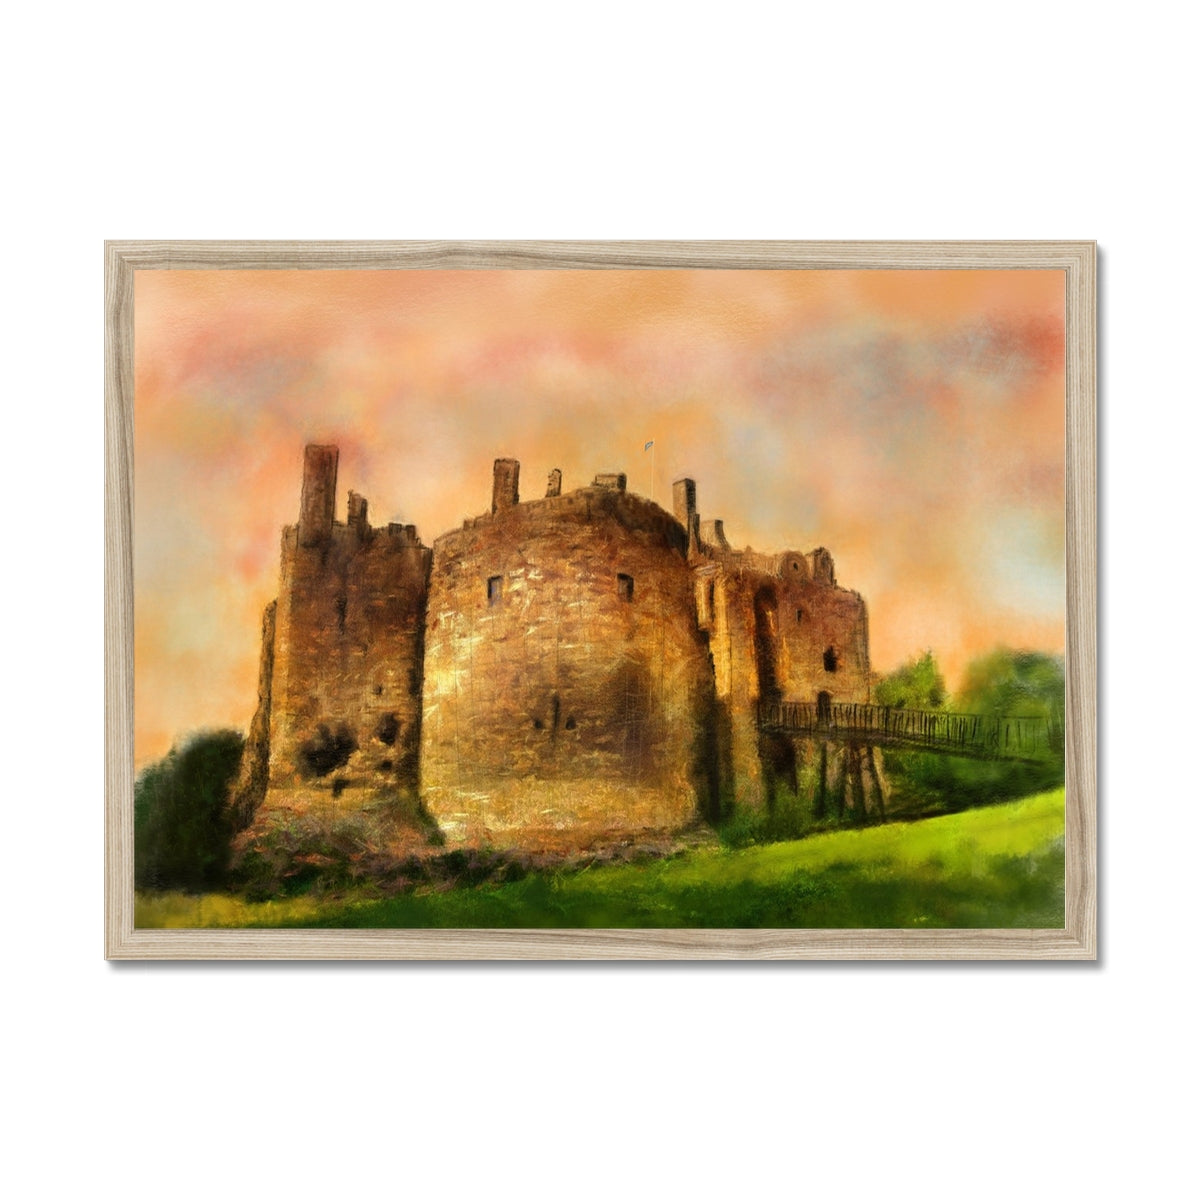 Dirleton Castle Dusk Painting | Framed Prints From Scotland-Framed Prints-Historic & Iconic Scotland Art Gallery-A2 Landscape-Natural Frame-Paintings, Prints, Homeware, Art Gifts From Scotland By Scottish Artist Kevin Hunter